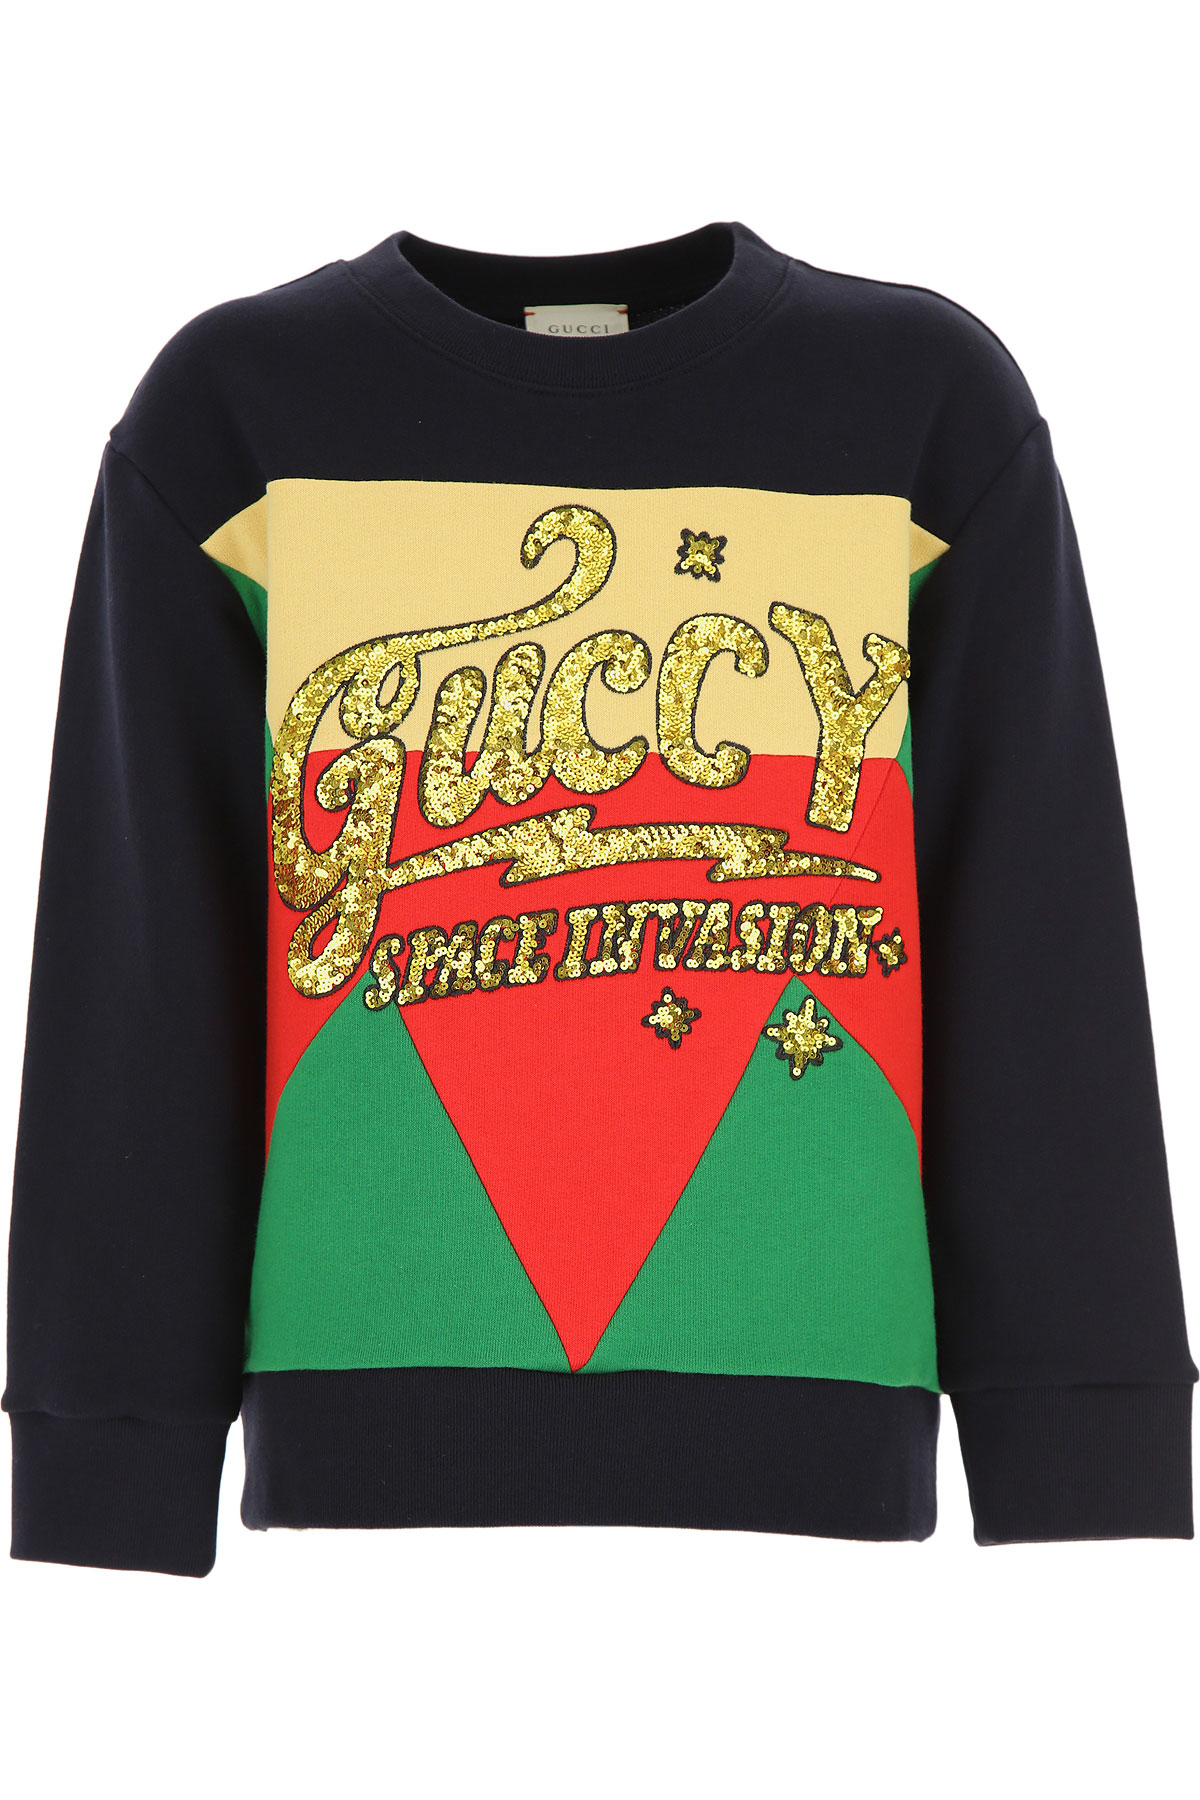 Gucci Kinder Sweatshirt & Kapuzenpullover für Mädchen Günstig im Sale, Dunkelblau, Baumwolle, 2017, 10Y 4Y 6Y 8Y